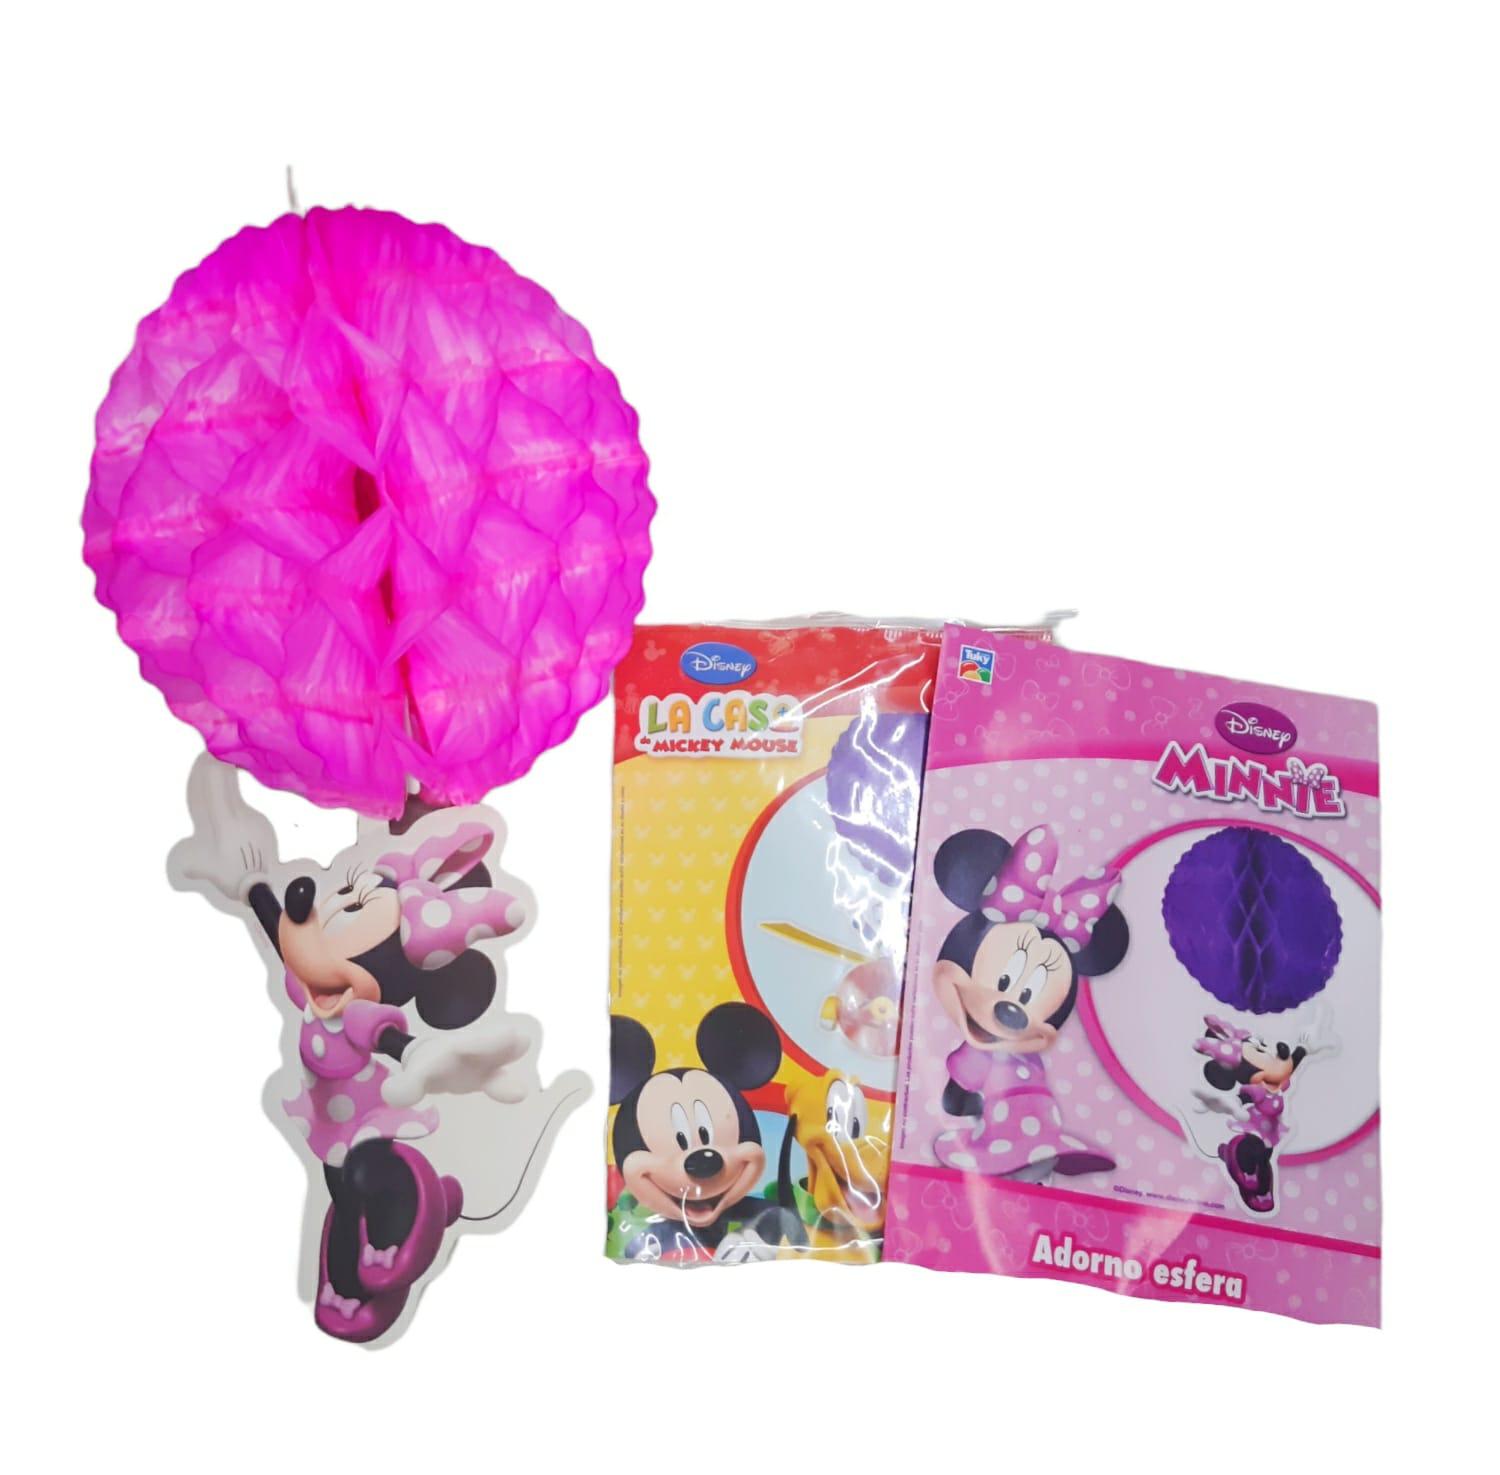 Adorno esfera Minnie y Mickey Mouse